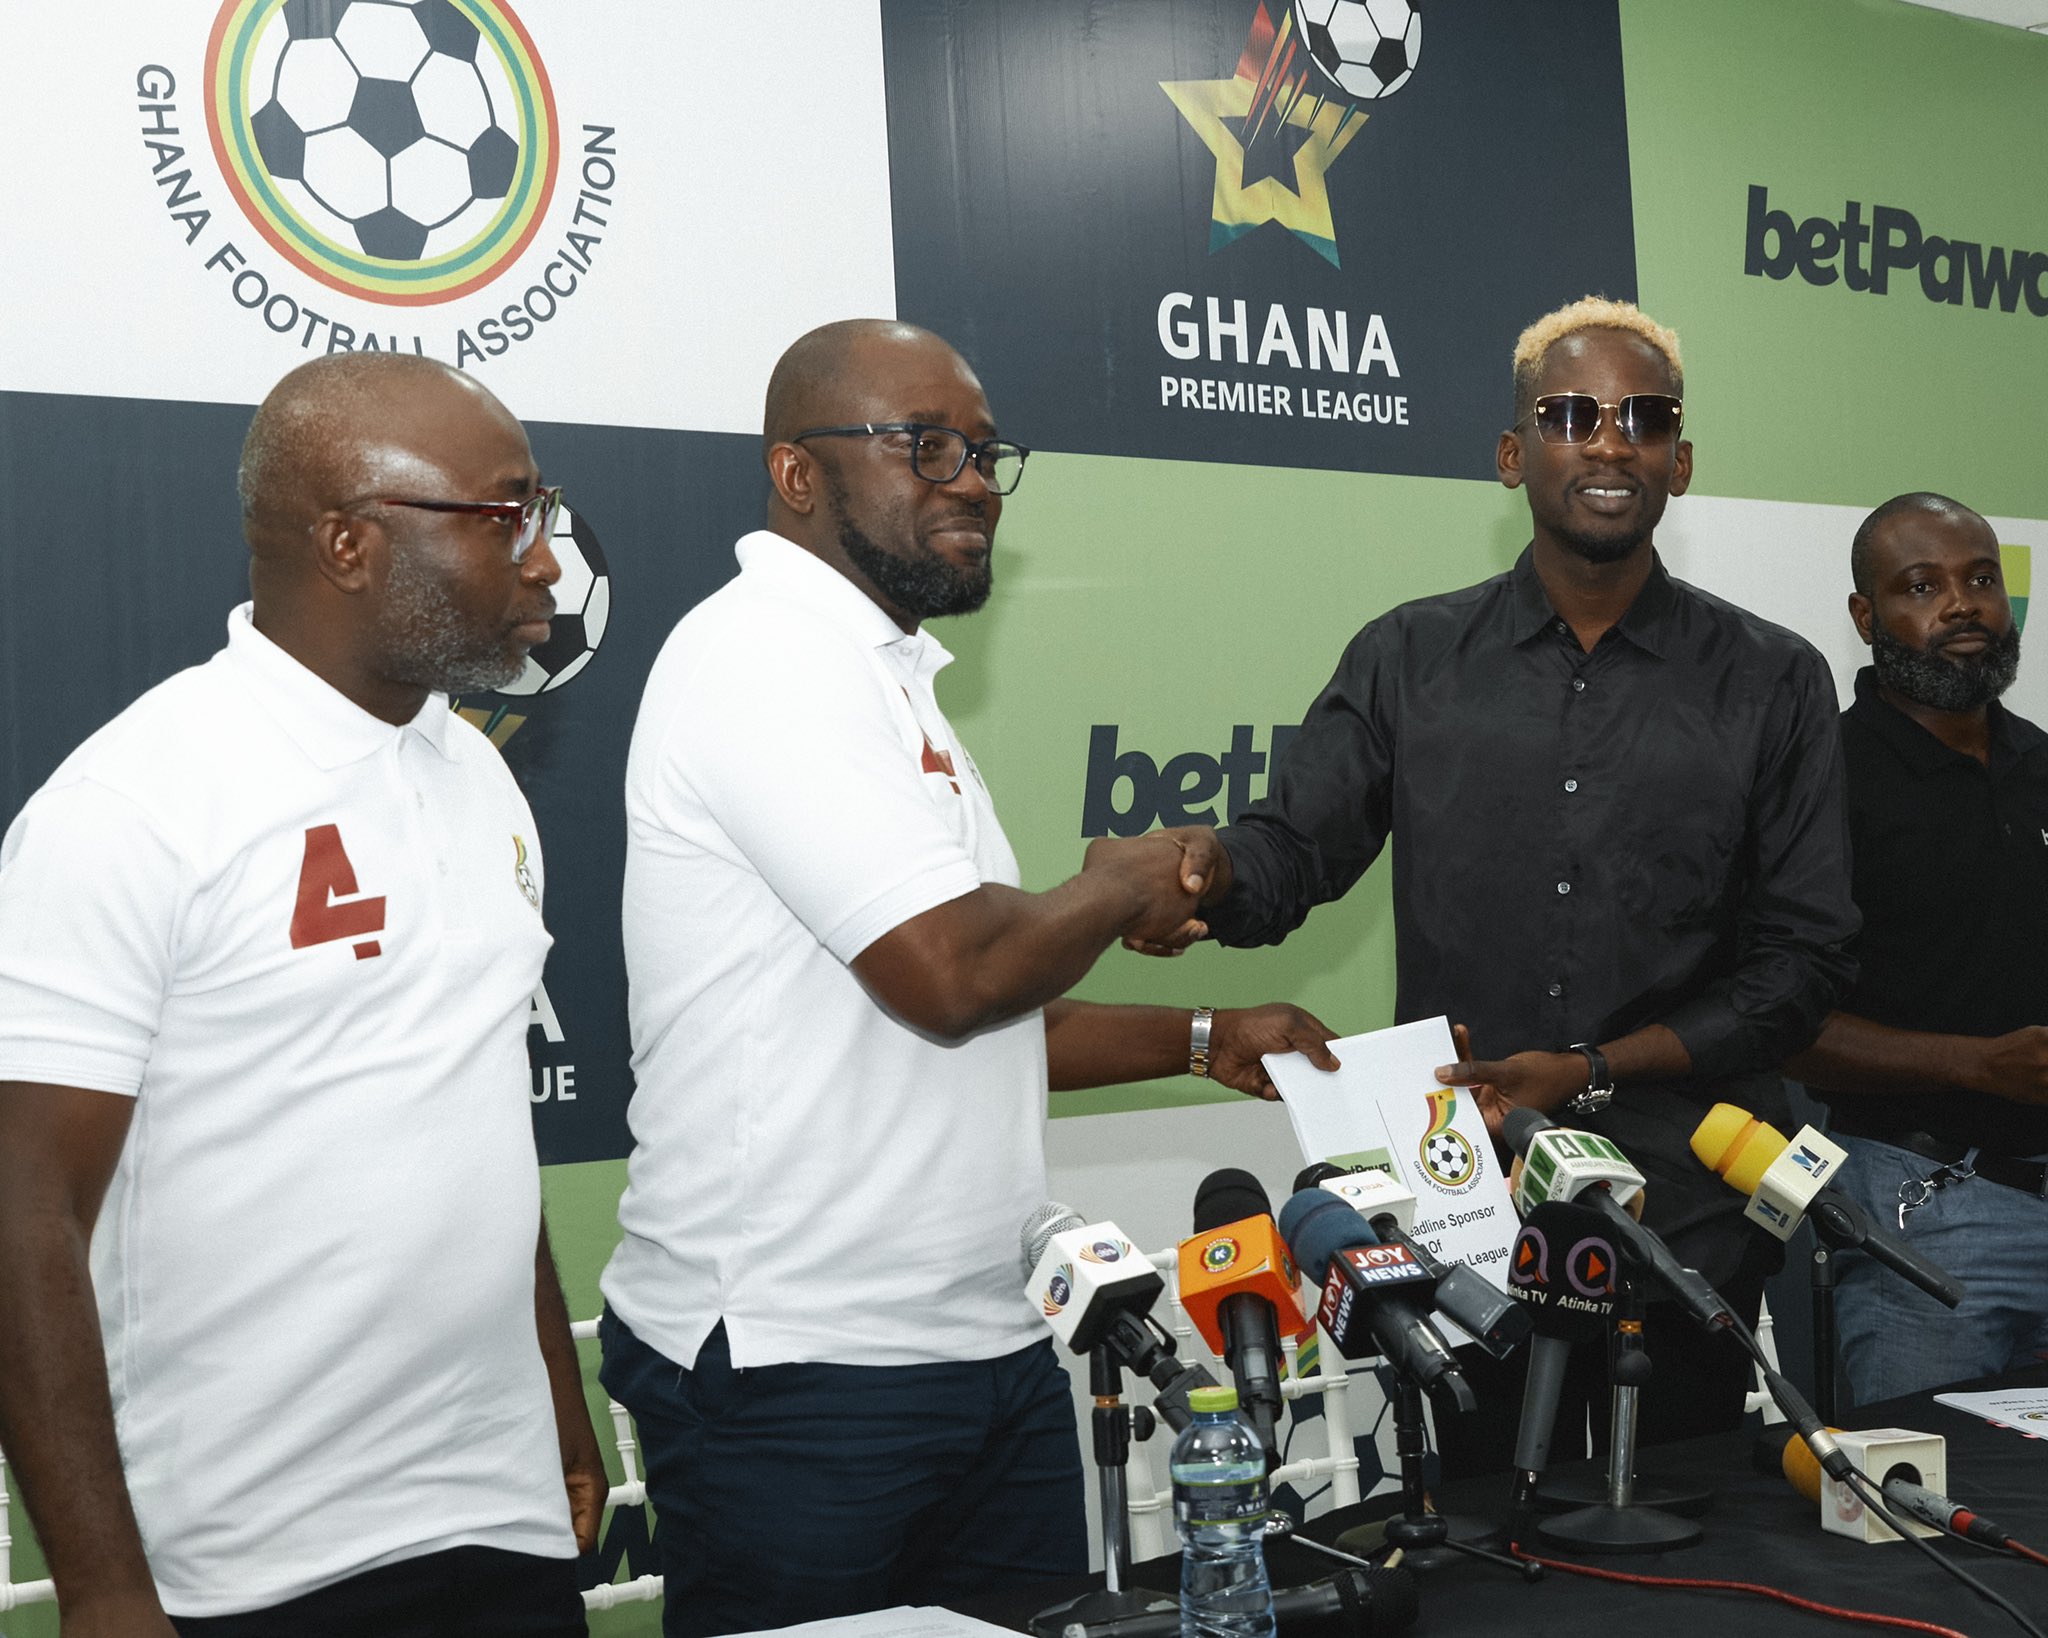 Mr Eazi Sponsors Ghana Premier League With Over N2.4 Billion (Photos)